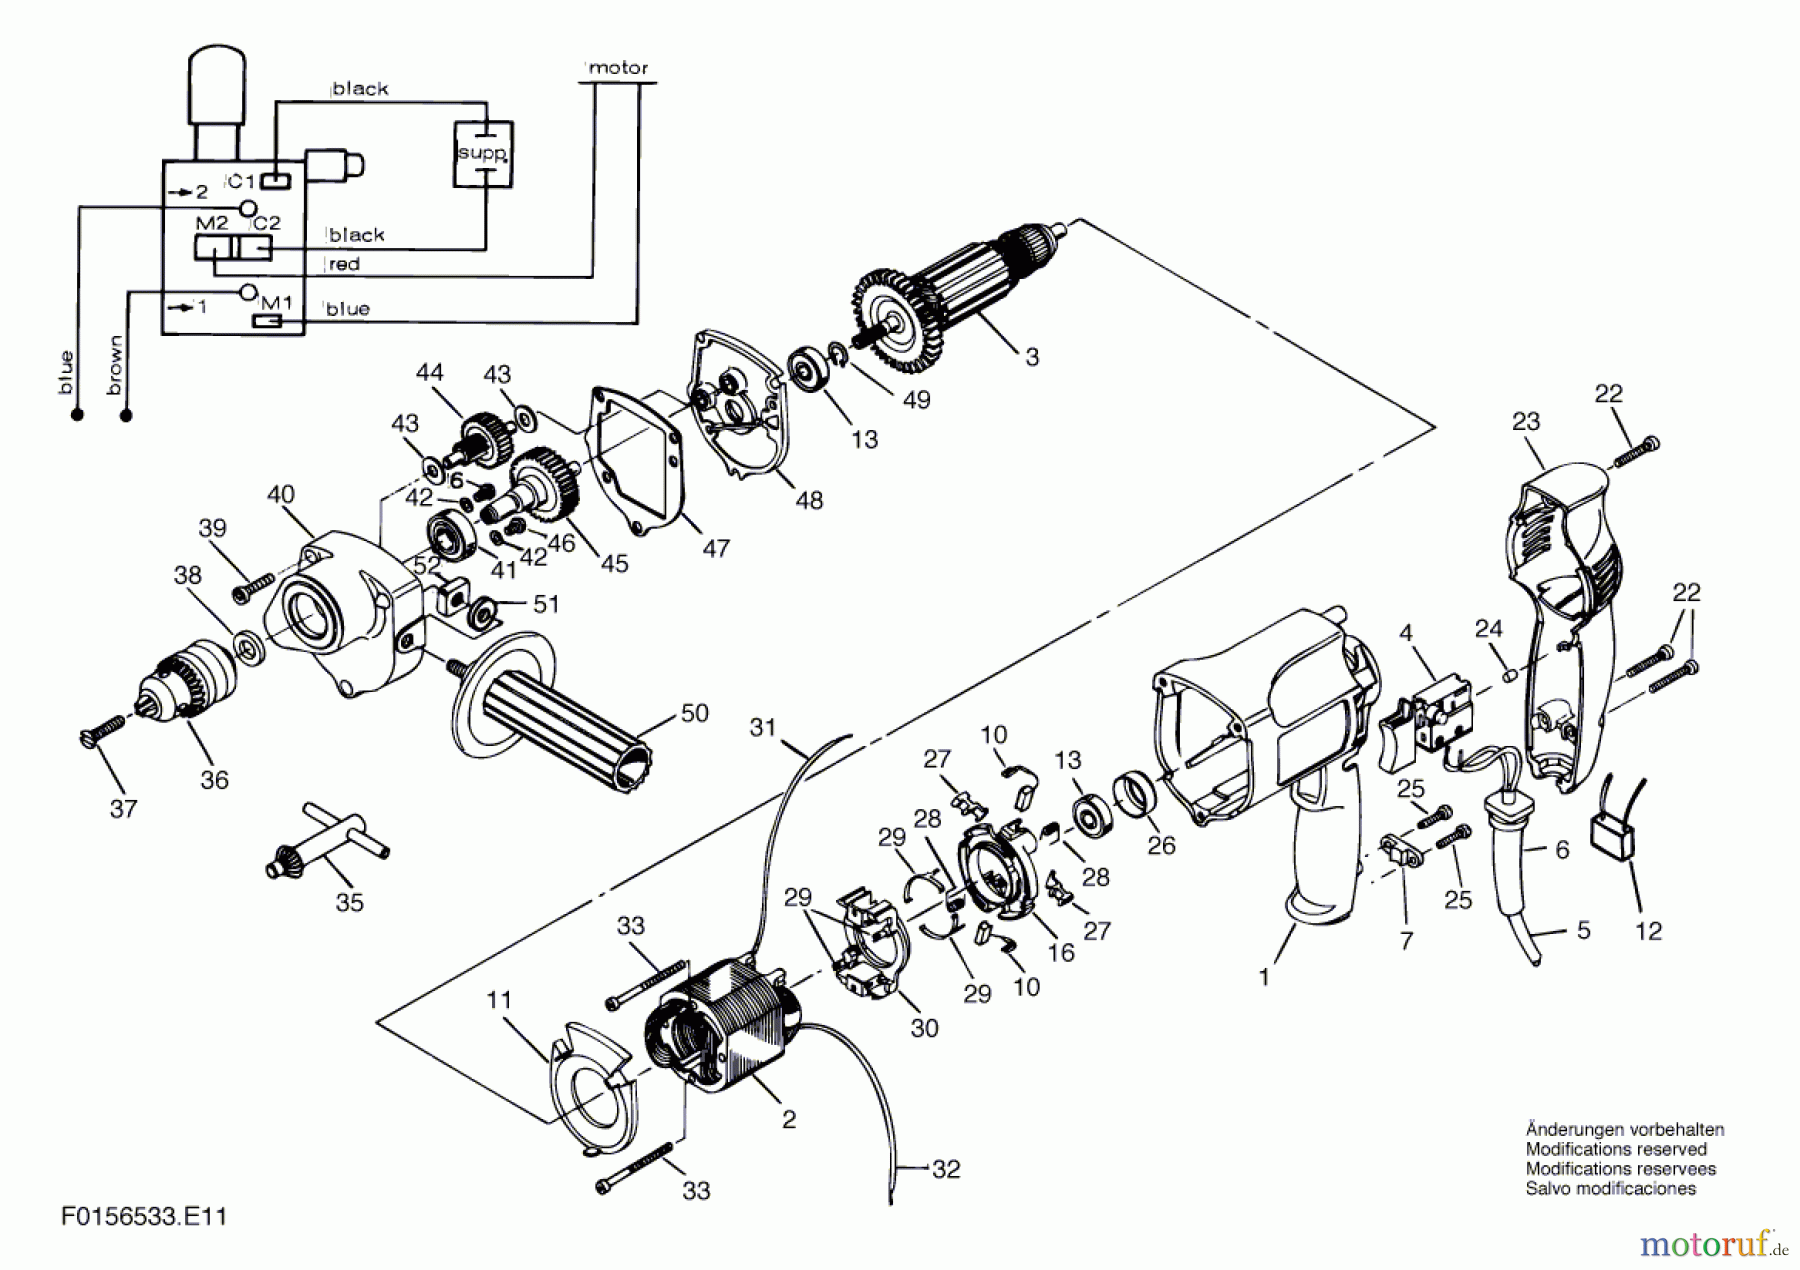  Bosch Werkzeug Bohrmaschine 6533 Seite 1